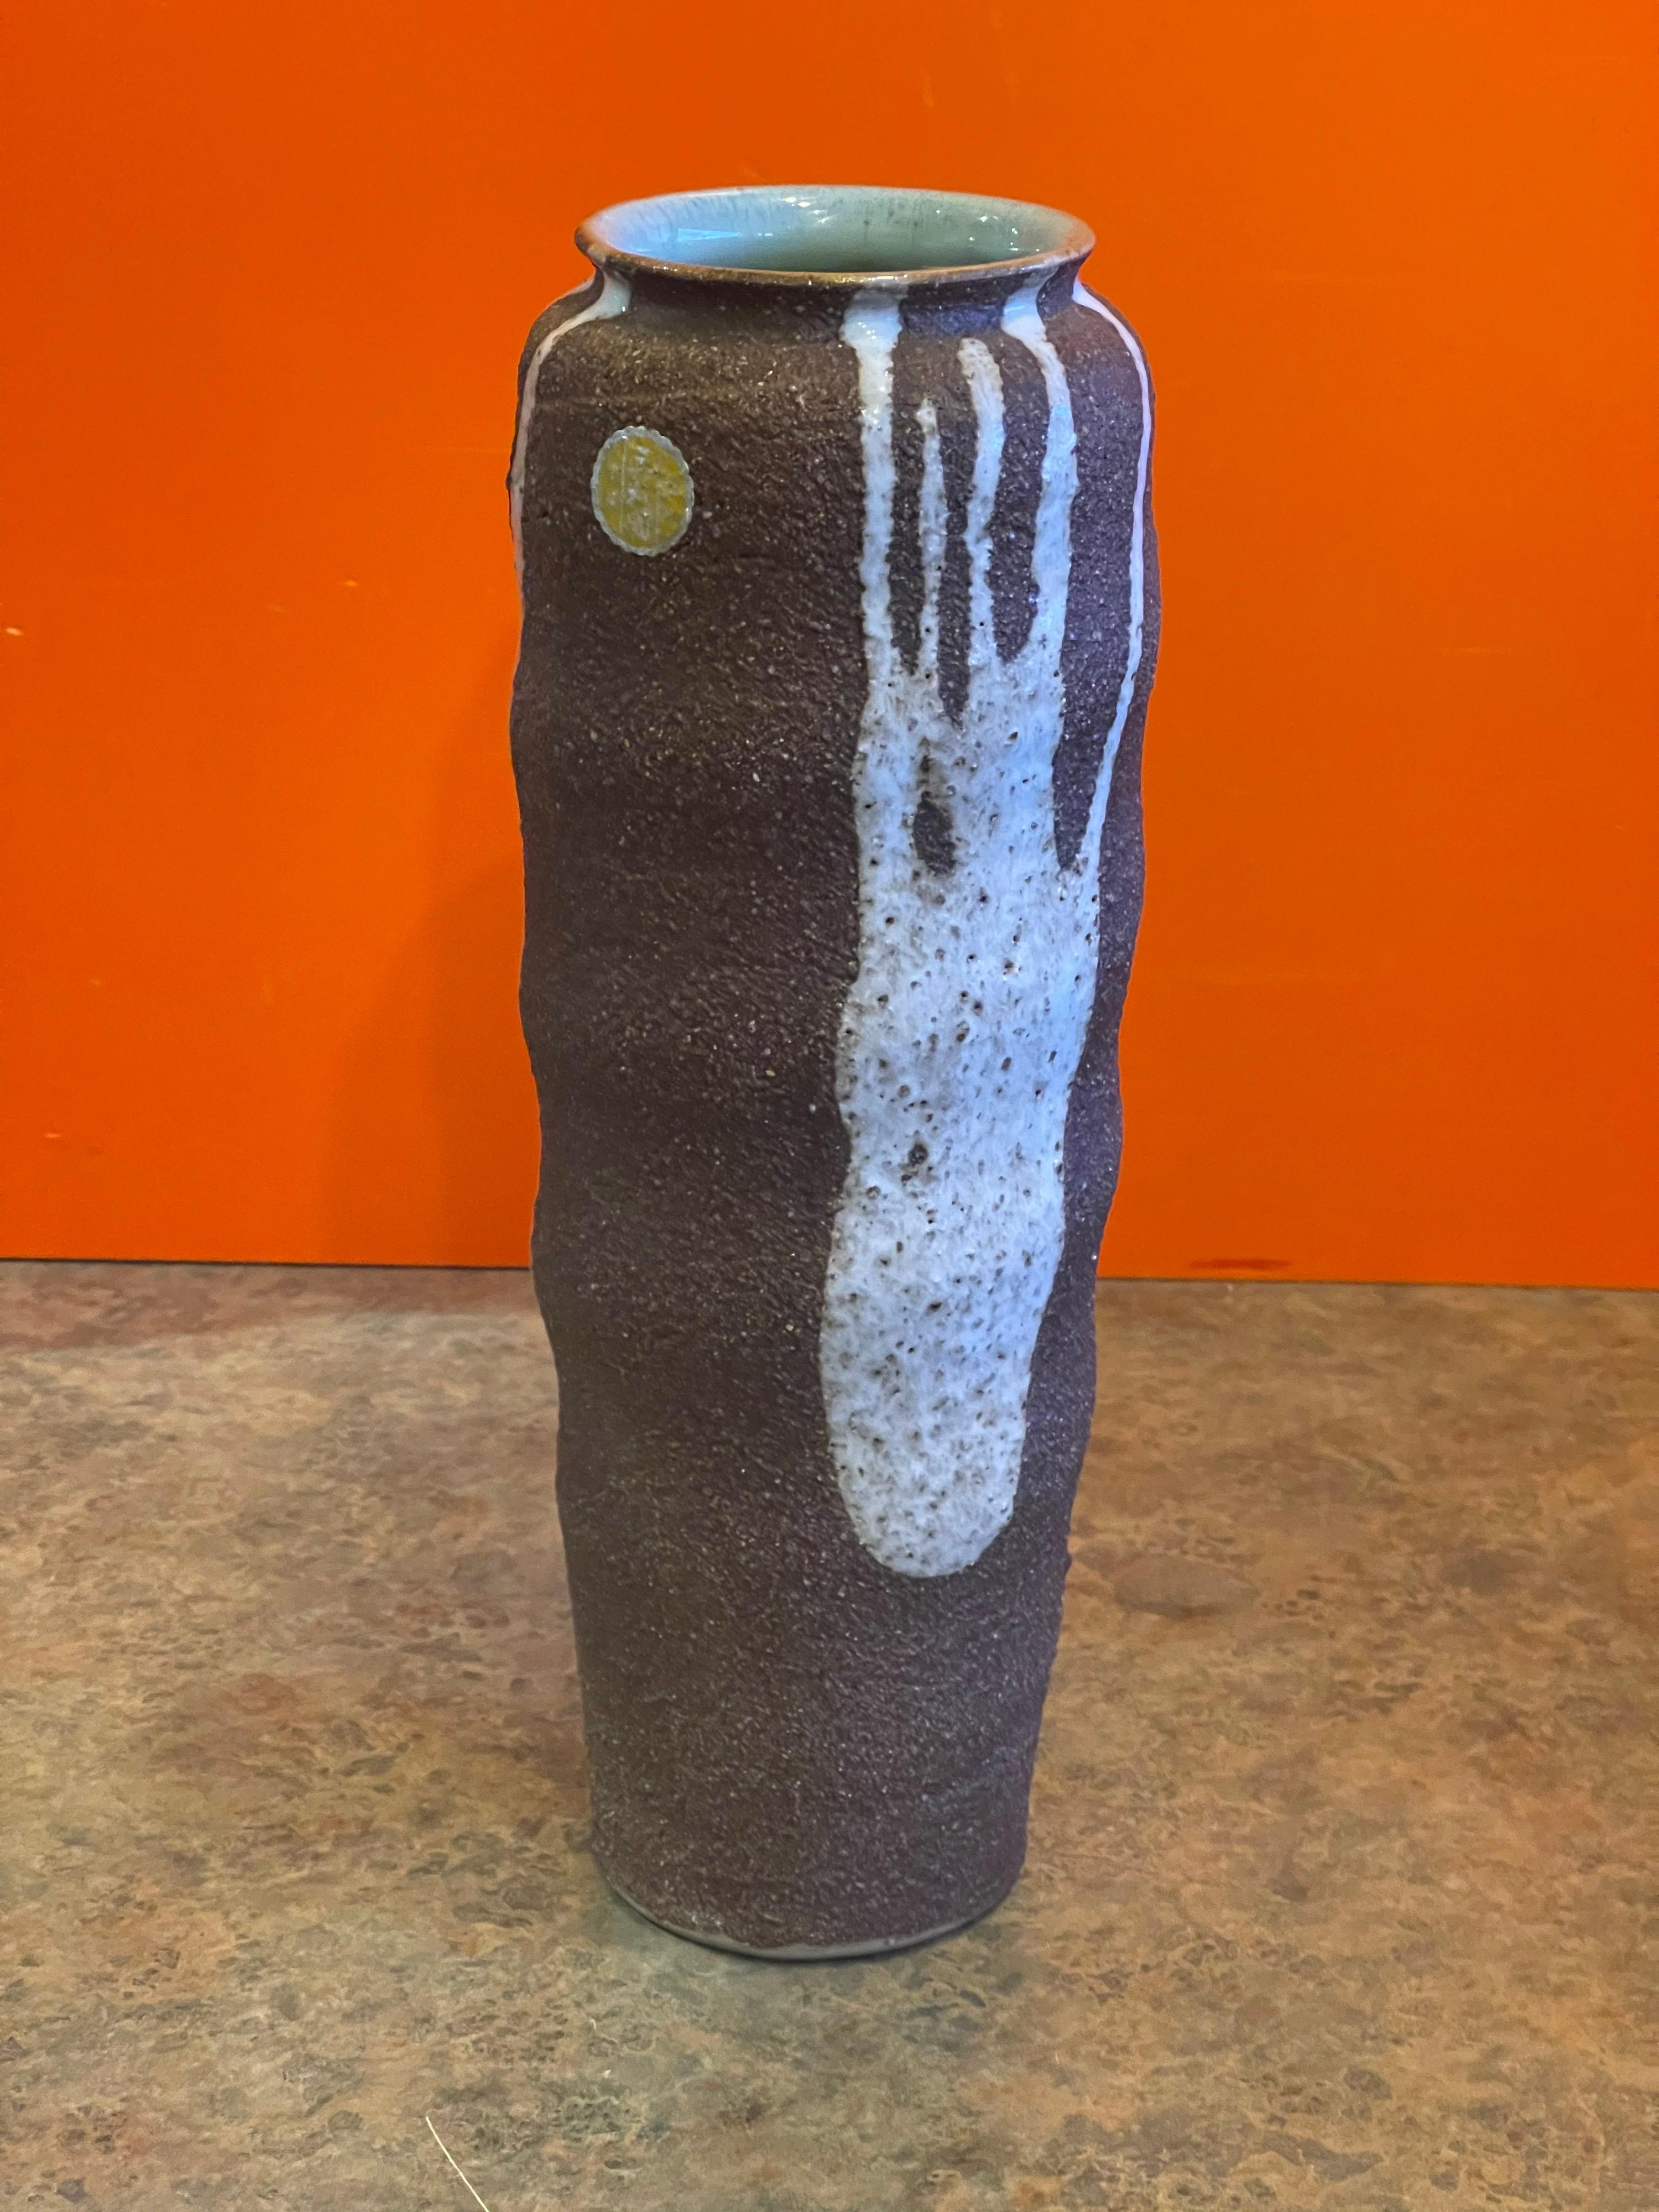 Vase aus Steingut mit Tropfglasur aus der Mitte des Jahrhunderts, ca. 1970. Die Vase wurde in Japan hergestellt und ist in sehr gutem Zustand ohne Chips oder Risse; sie misst 4,5